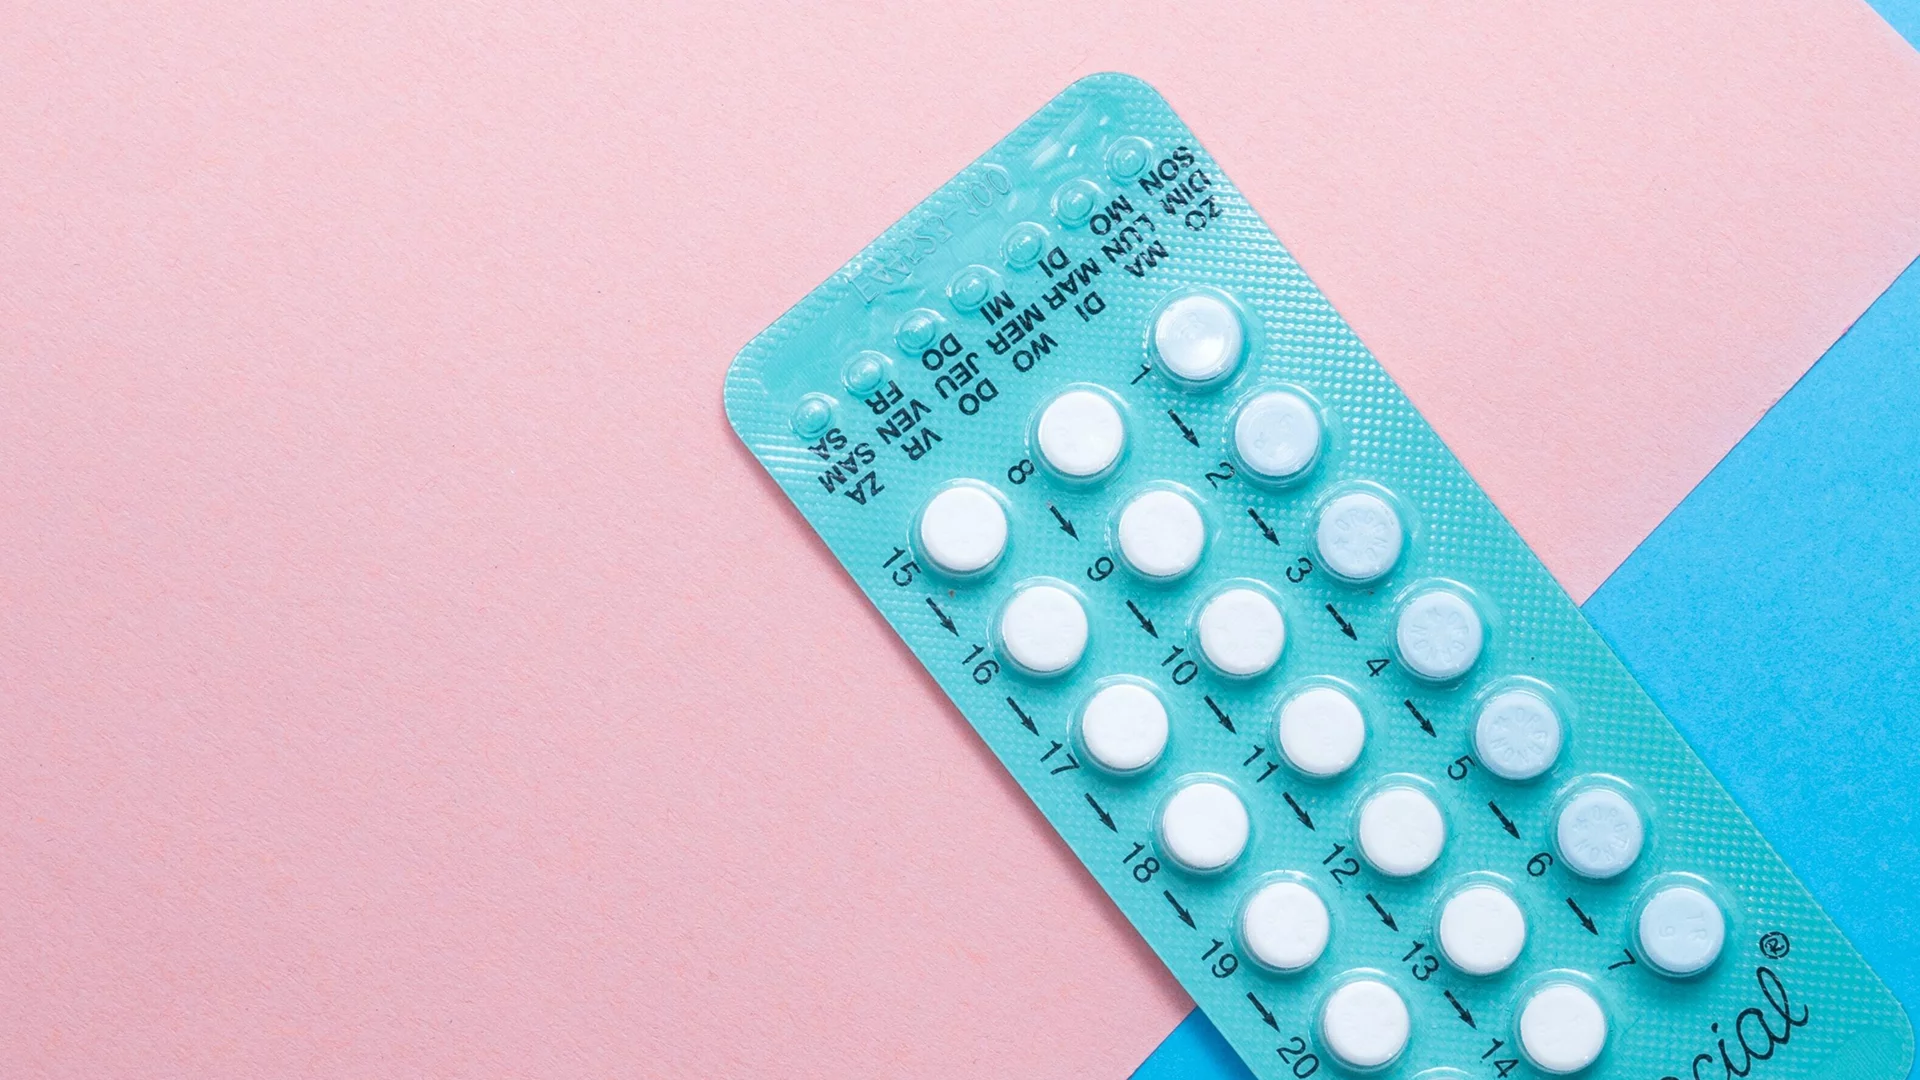 В Италии женщины смогут бесплатно получать противозачаточные таблетки и доконтактную профилактику ВИЧ (PrEP)